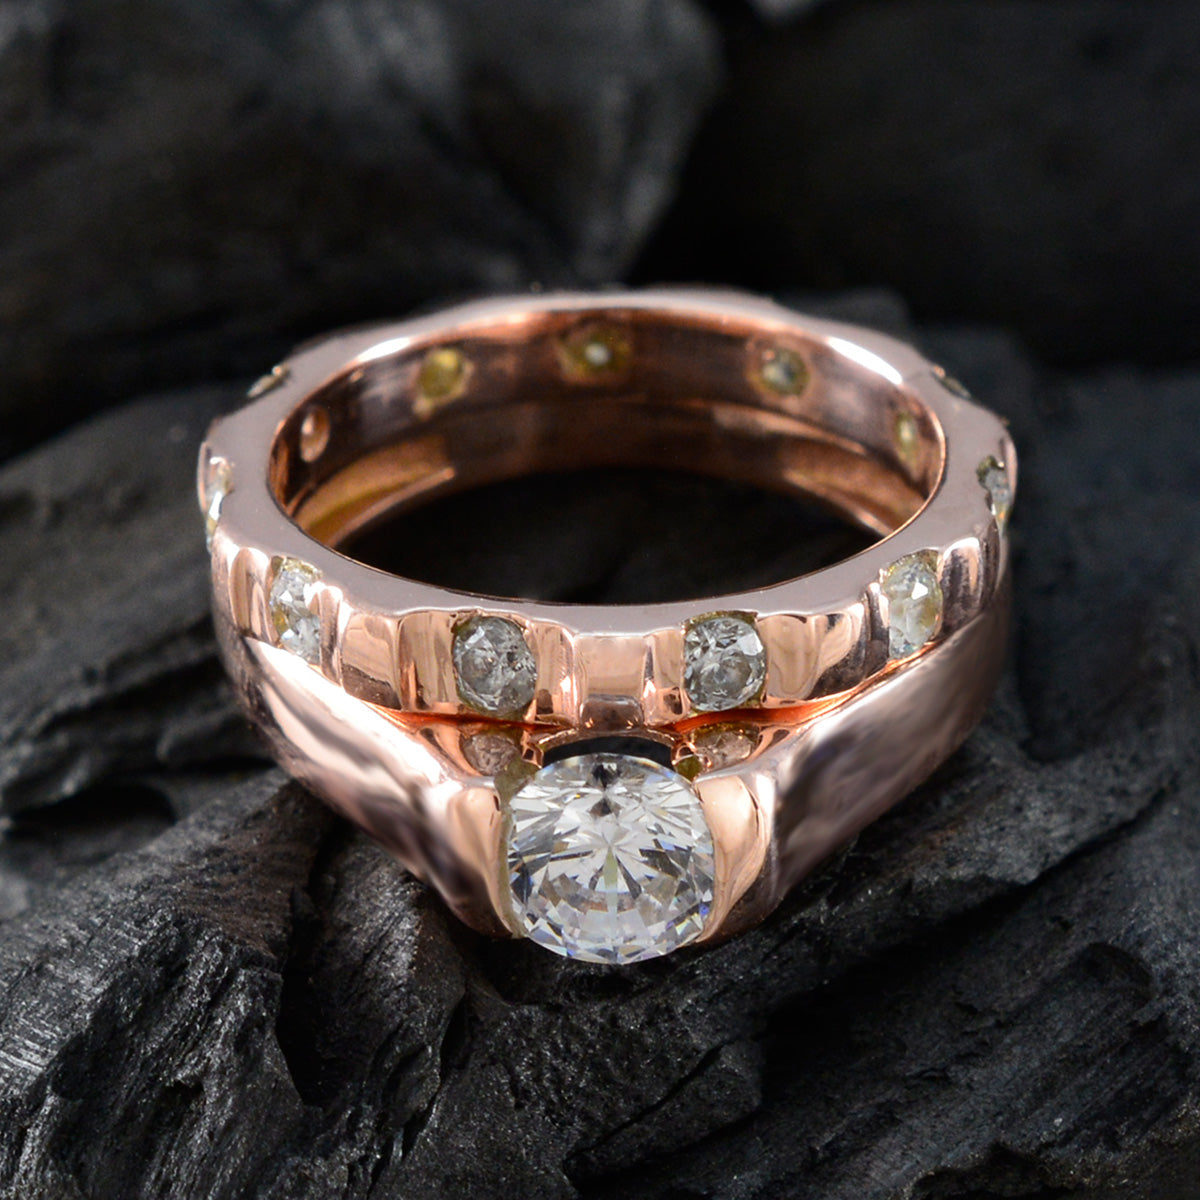 riyo perfekt silverring med roséguldplätering vit cz sten rund form stiftinställning smycken jubileumsring